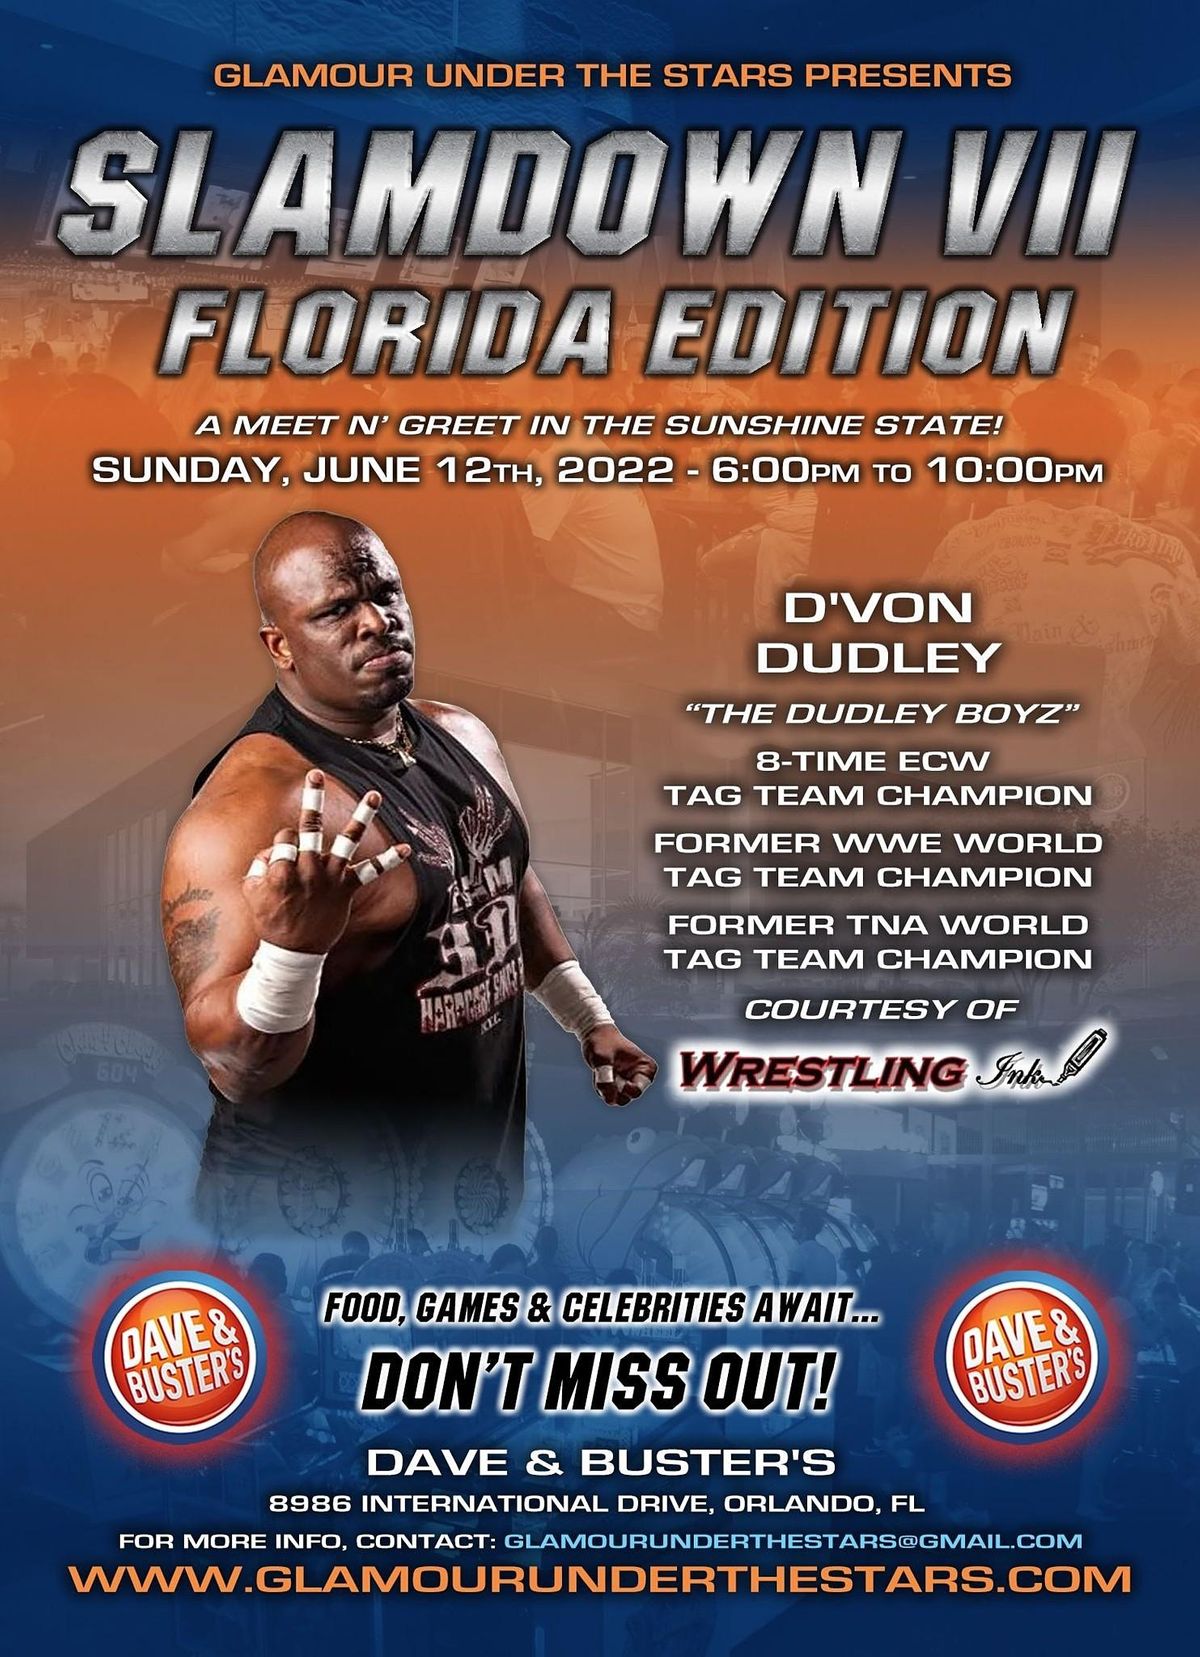 WWE ECW Star D'Von  Dudley to Appear at Slamdown Orlando Florida 06\/12\/2022